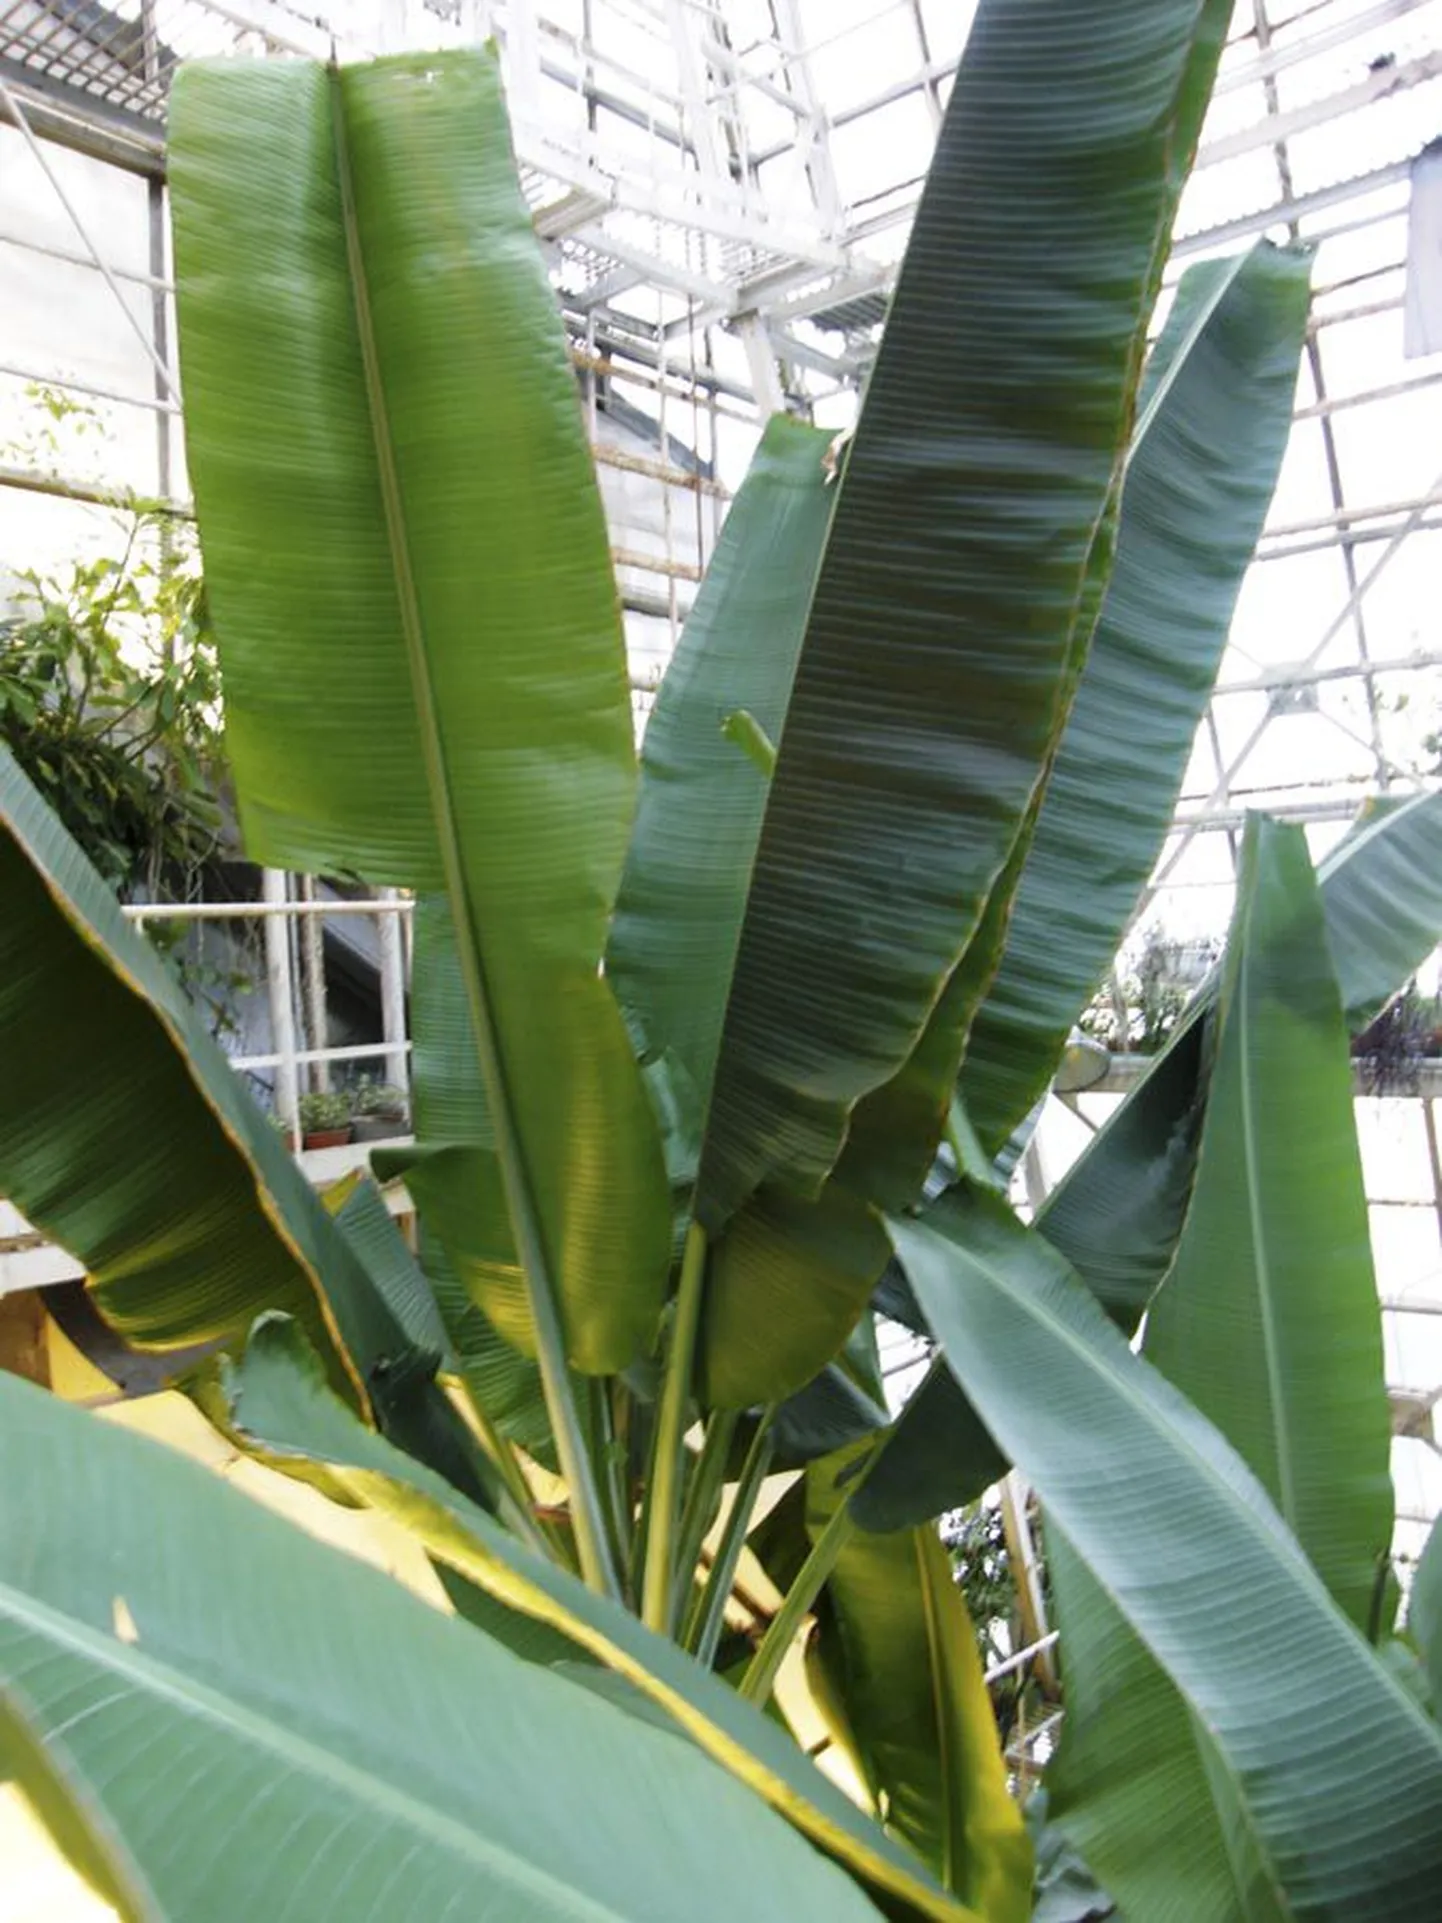 5 x Hans Väre
Tavatingimustes pole banaanide suured lehed sugugi nii ilusad ja terved kui kasvuhoone kaitsvas varjus. Need oleksid justkui kokku liimitud kitsastest ribadest, mis tuule ja vihma käes kergesti rebenevad, et loodusjõud lehti täiesti ära ei lõhuks. Maailma suurima rohttaime metsiku versiooni viljad näevad välja samasugused kui kultuurbanaani omad, kuid on palju pisemad ja tuubil täis poolesentimeetrise läbimõõduga seemneid.